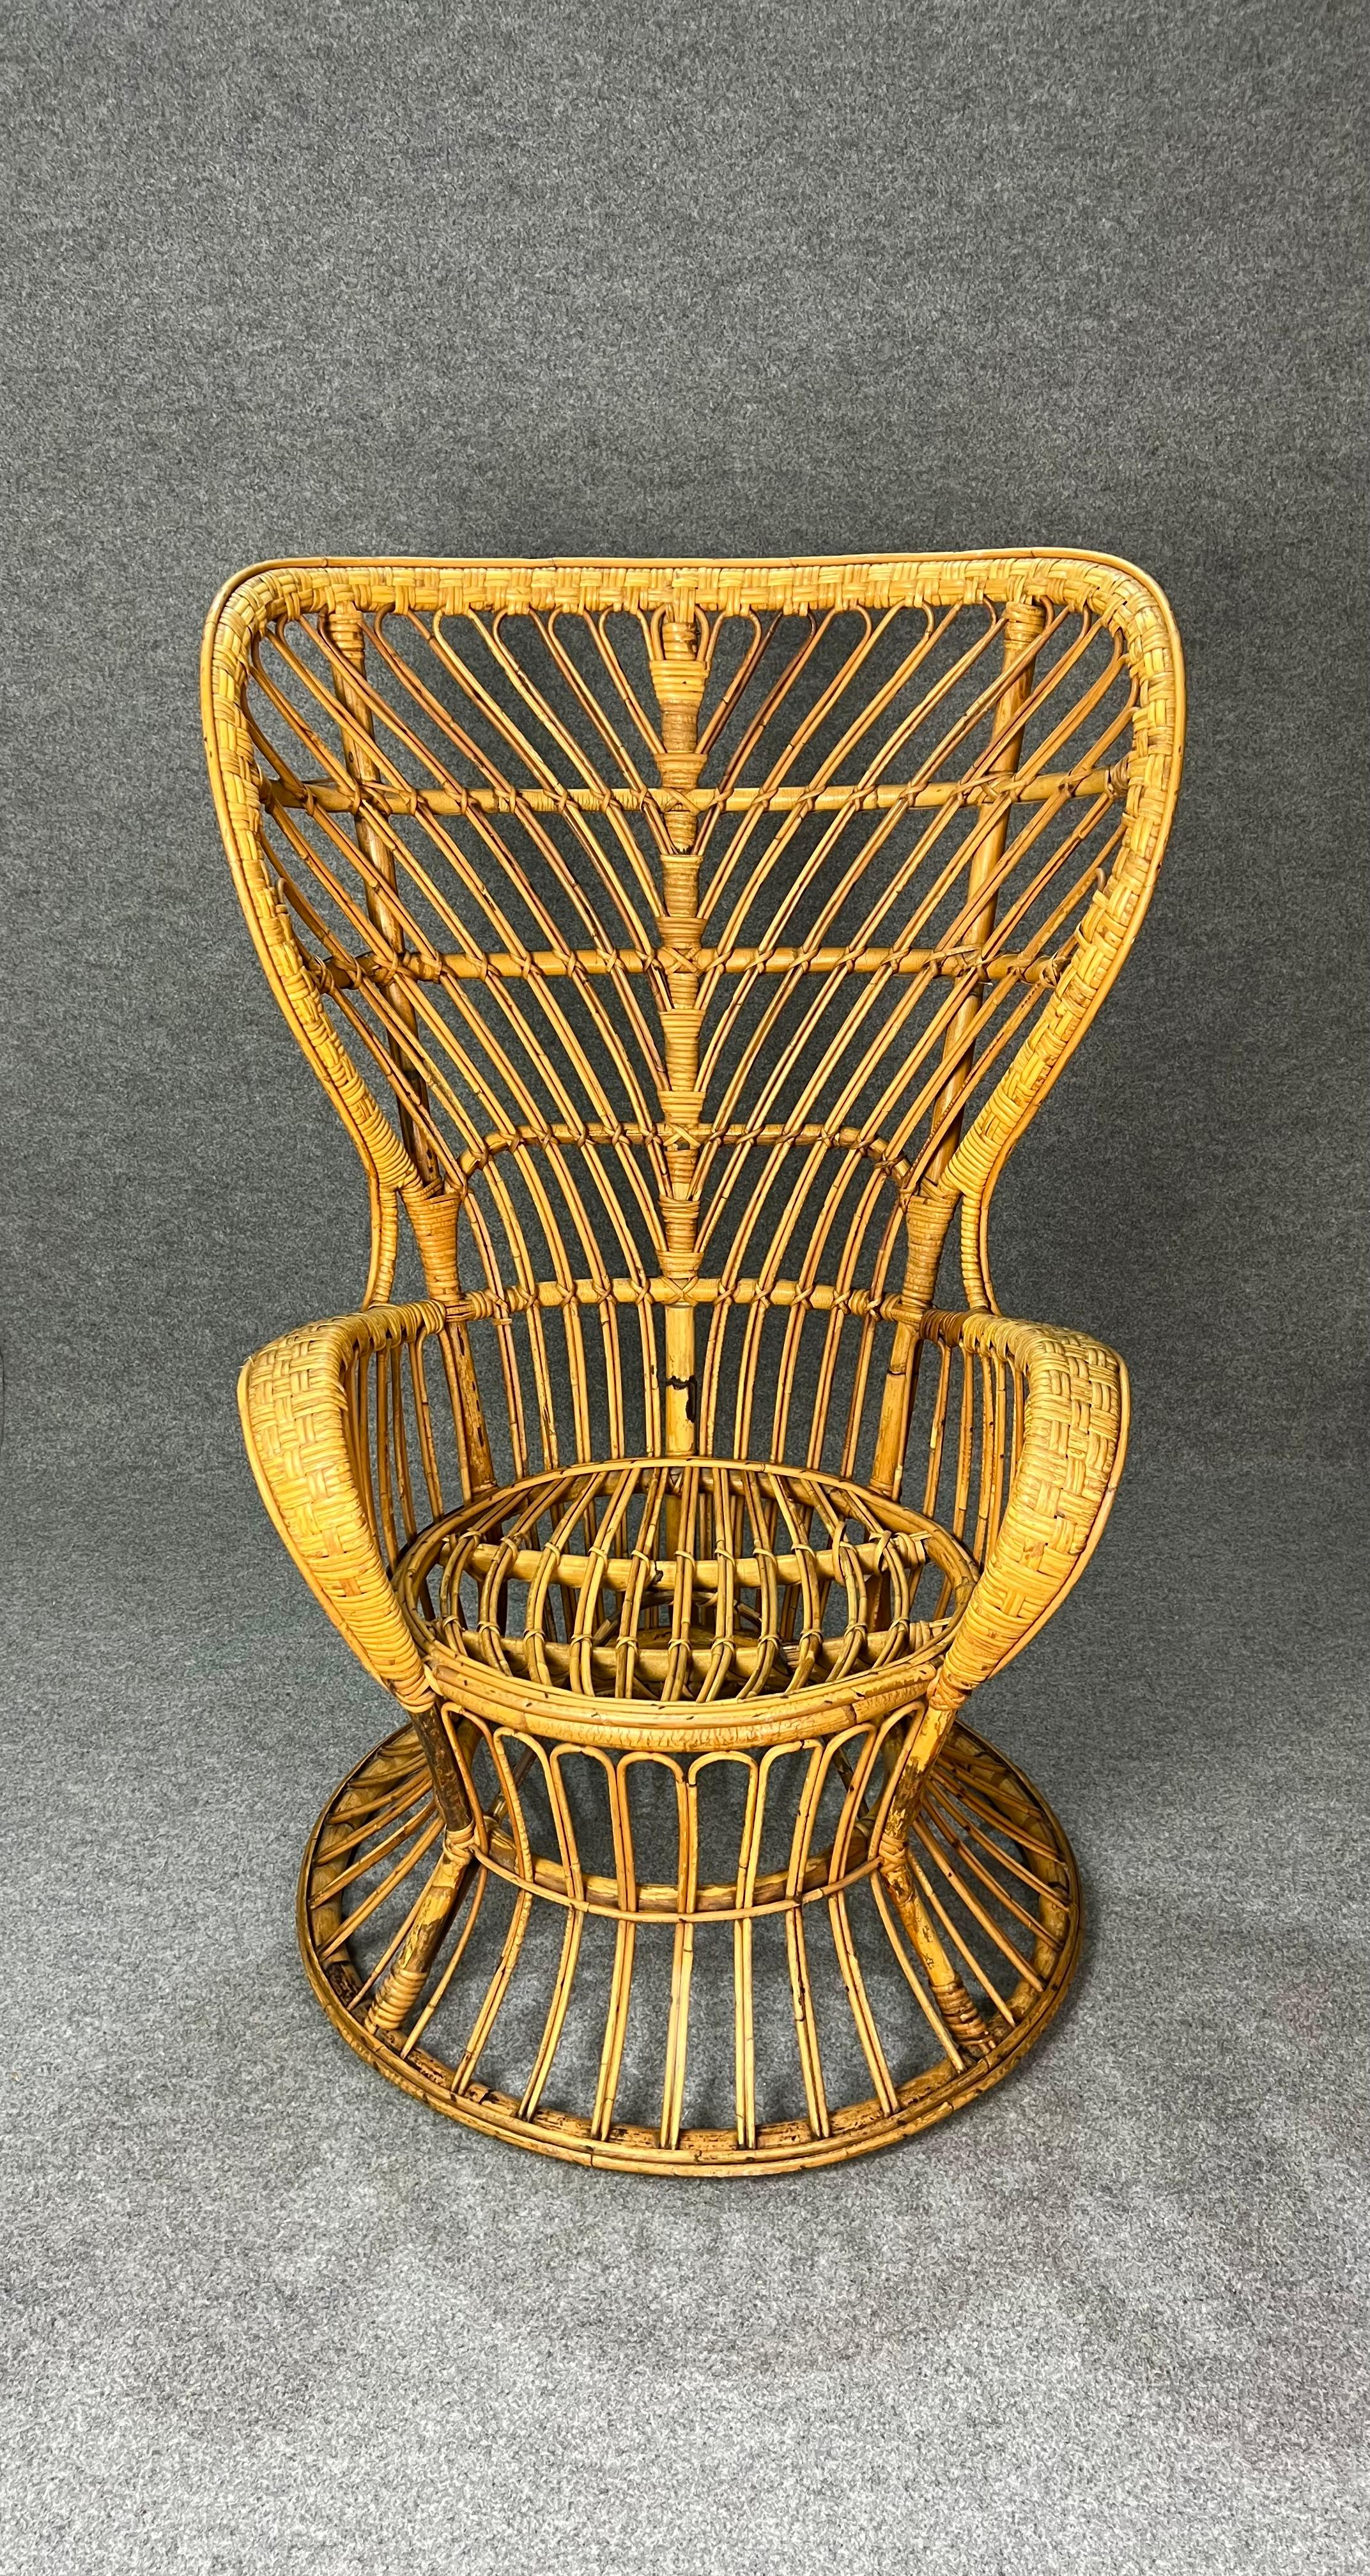 Sessel, entworfen von den bekannten italienischen Designern Lio Carminati und Gio Ponti und in den 1950er Jahren von Vittorio Bonacina hergestellt.
Der hochlehnige Sessel mit geschwungenen Formen wurde aus Bambus und Rattan/Weide hergestellt.